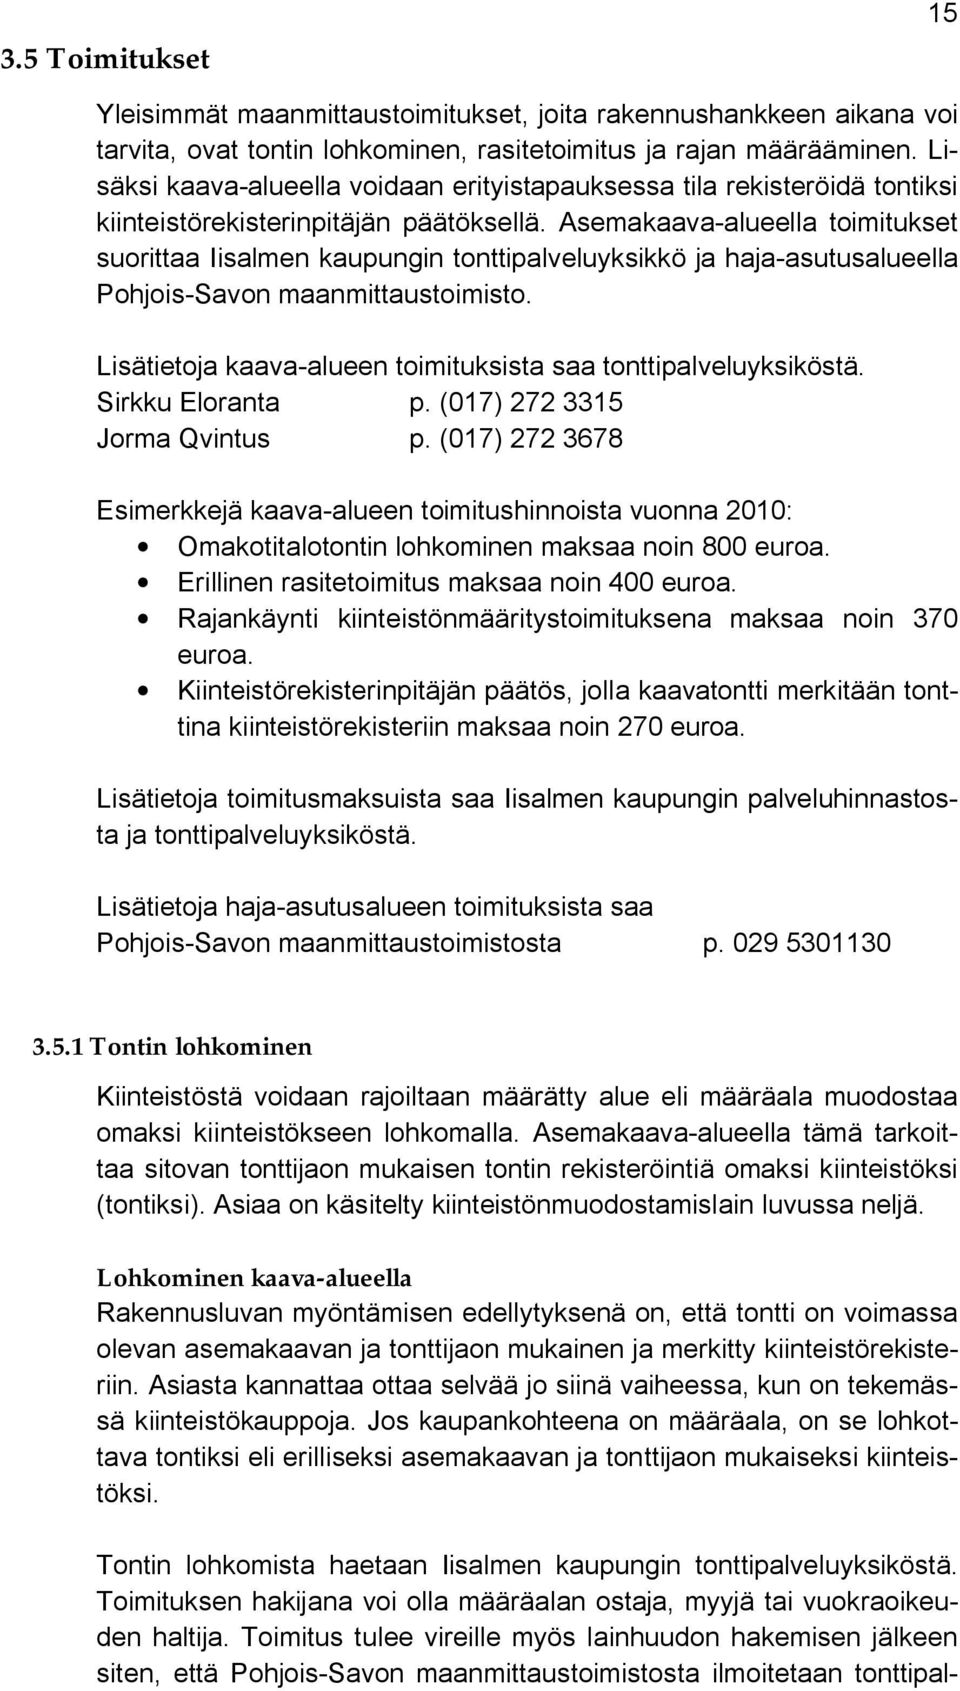 Asemakaava-alueella toimitukset suorittaa Iisalmen kaupungin tonttipalveluyksikkö ja haja-asutusalueella Pohjois-Savon maanmittaustoimisto.